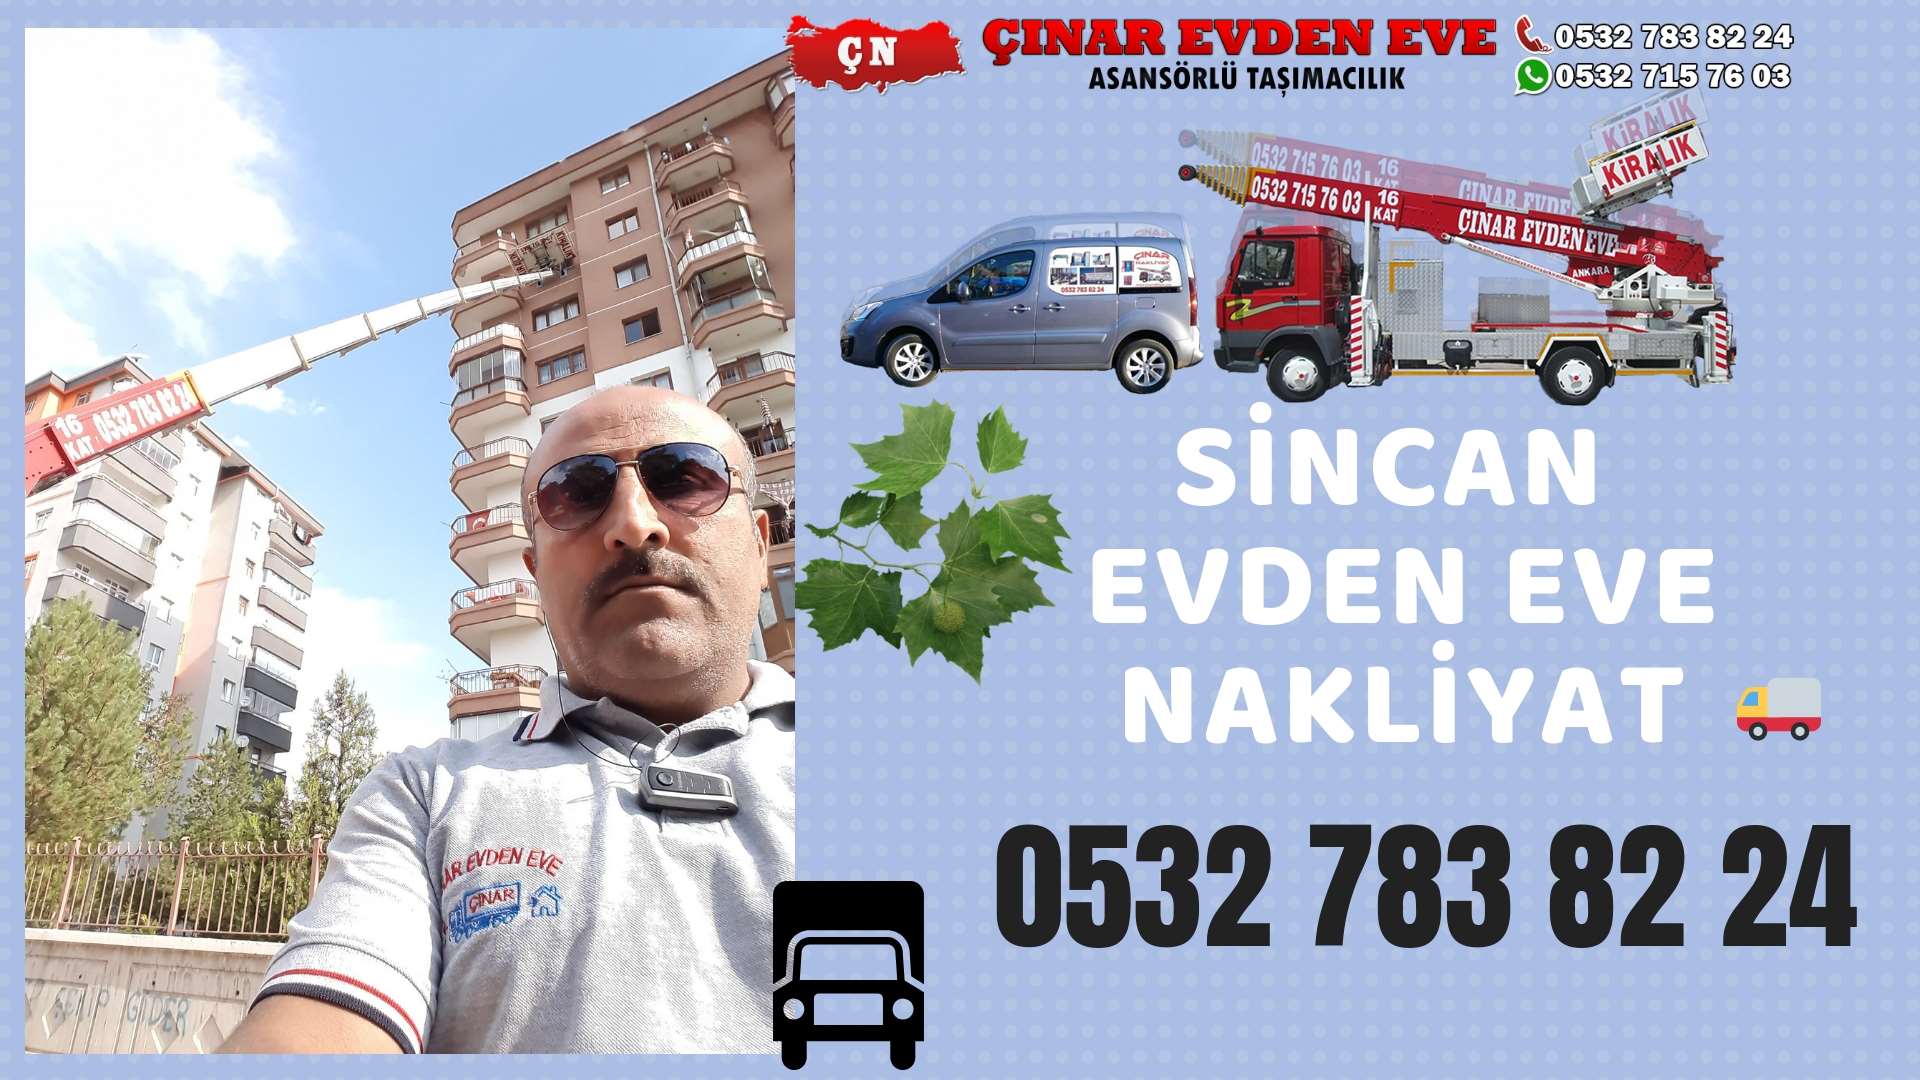 Ankara Yenikent Evden Eve Nakliyat, Asansörlü Taşımacılık, Ofis / İş Yeri Taşıma 0532 715 76 03